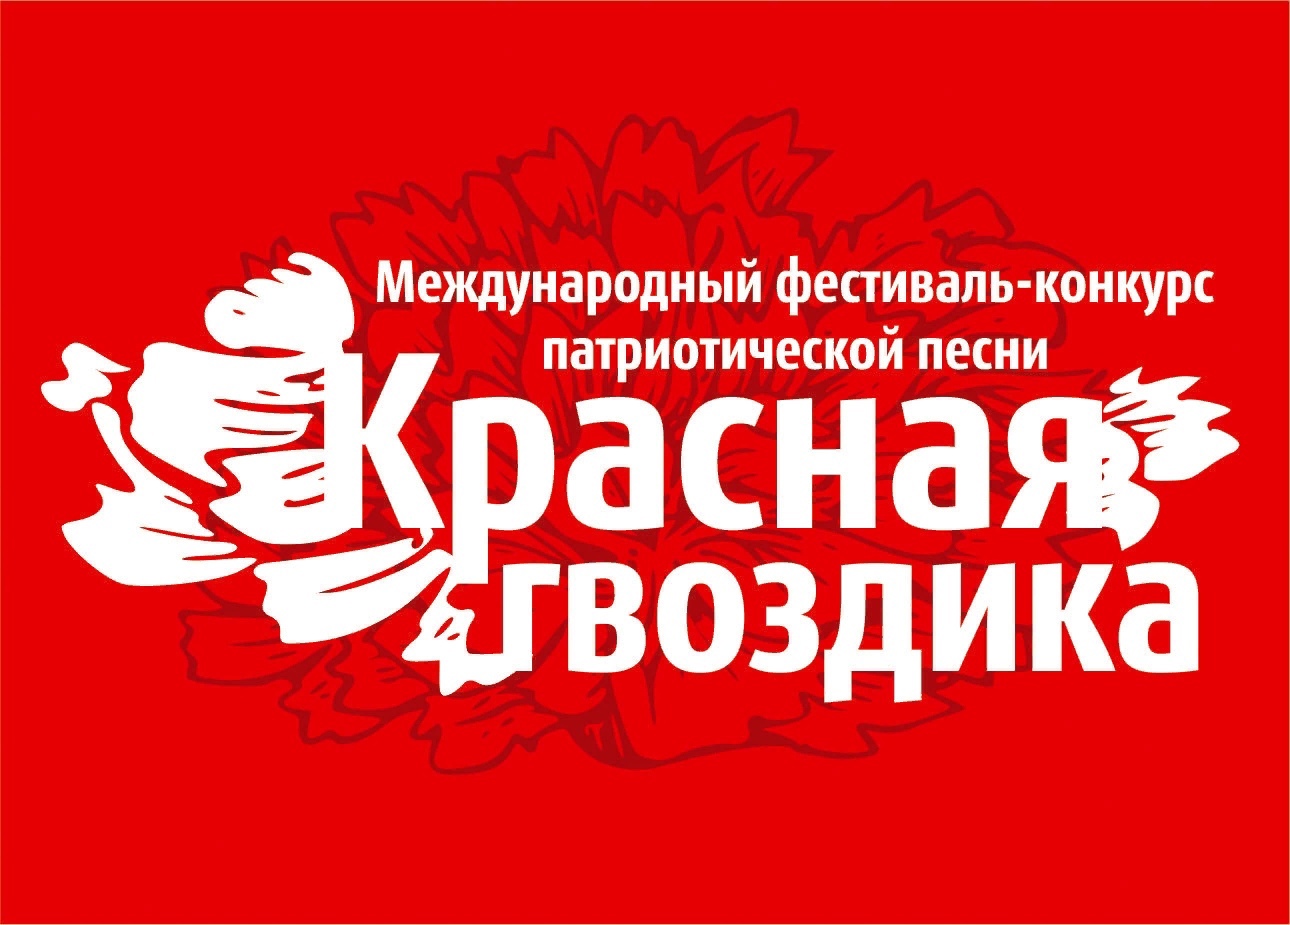 Смолян приглашают участвовать в фестивале патриотической песни «Красная гвоздика»